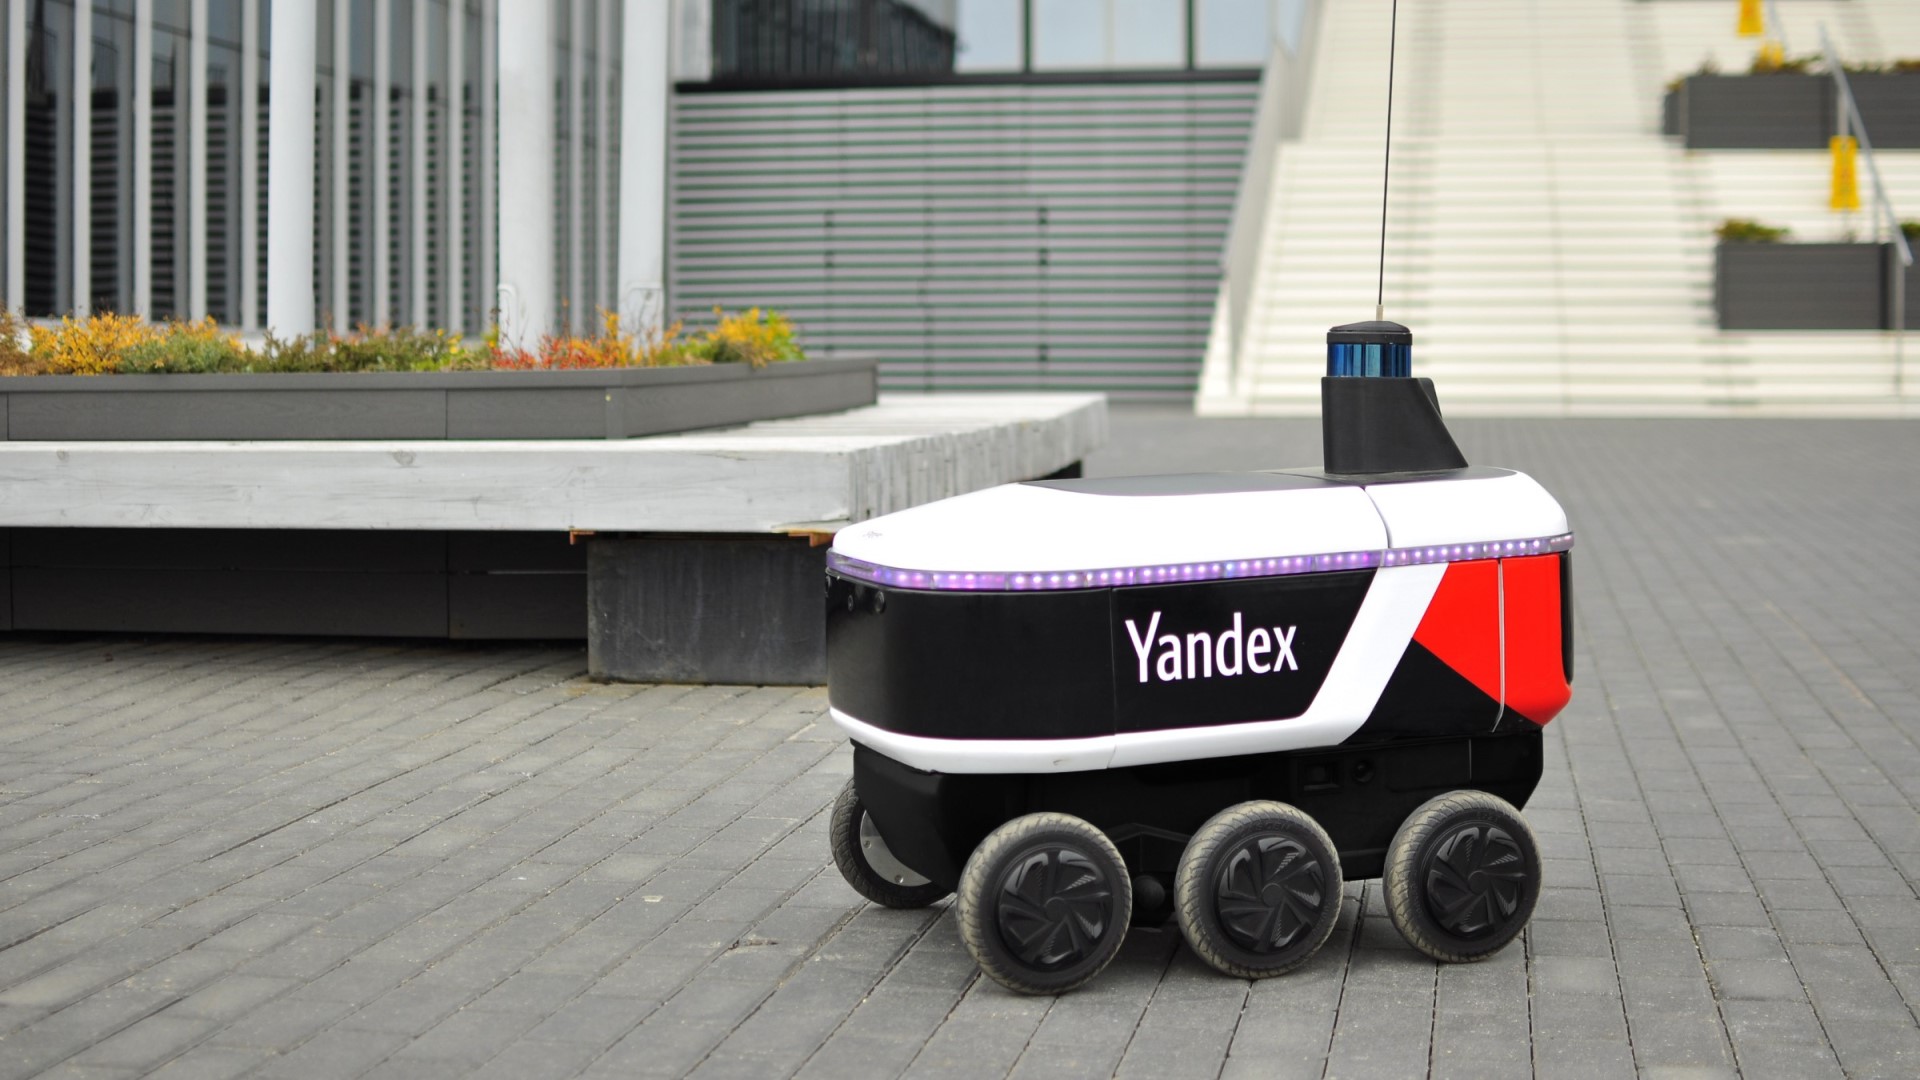 บริการส่งอาหาร Grubhub ยุติการใช้หุ่นยนต์ส่งสินค้าของ Yandex